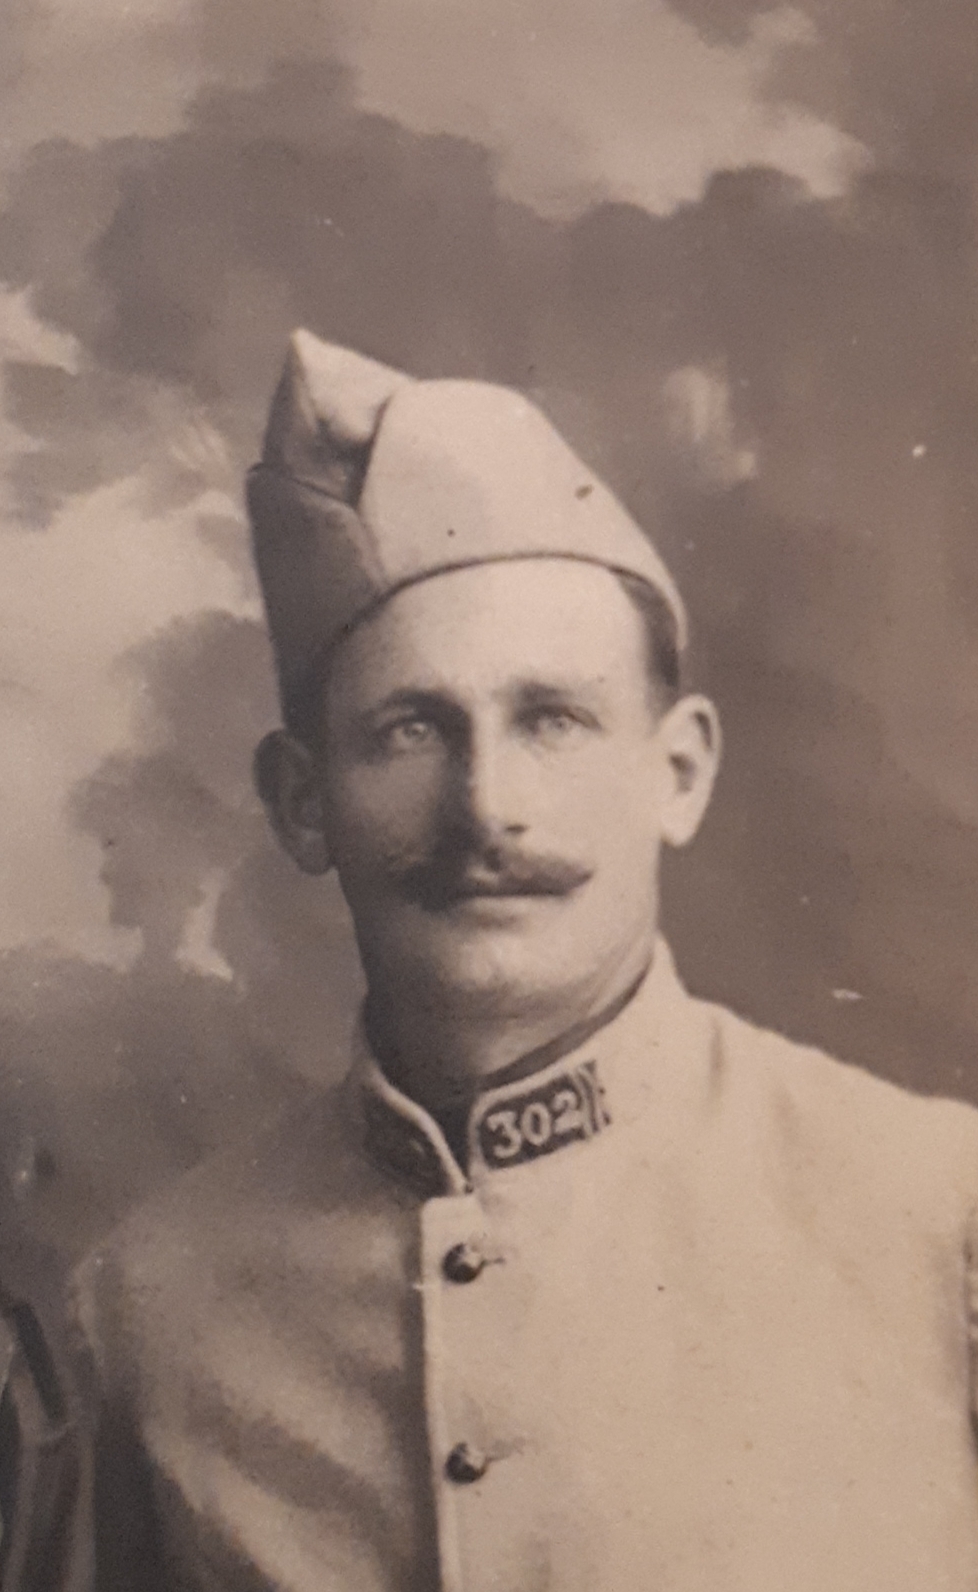 Henri Bréant, le grand-père de Francis, durant la Grande Guerre. Photo colorisée et améliorée par MyHeritage.